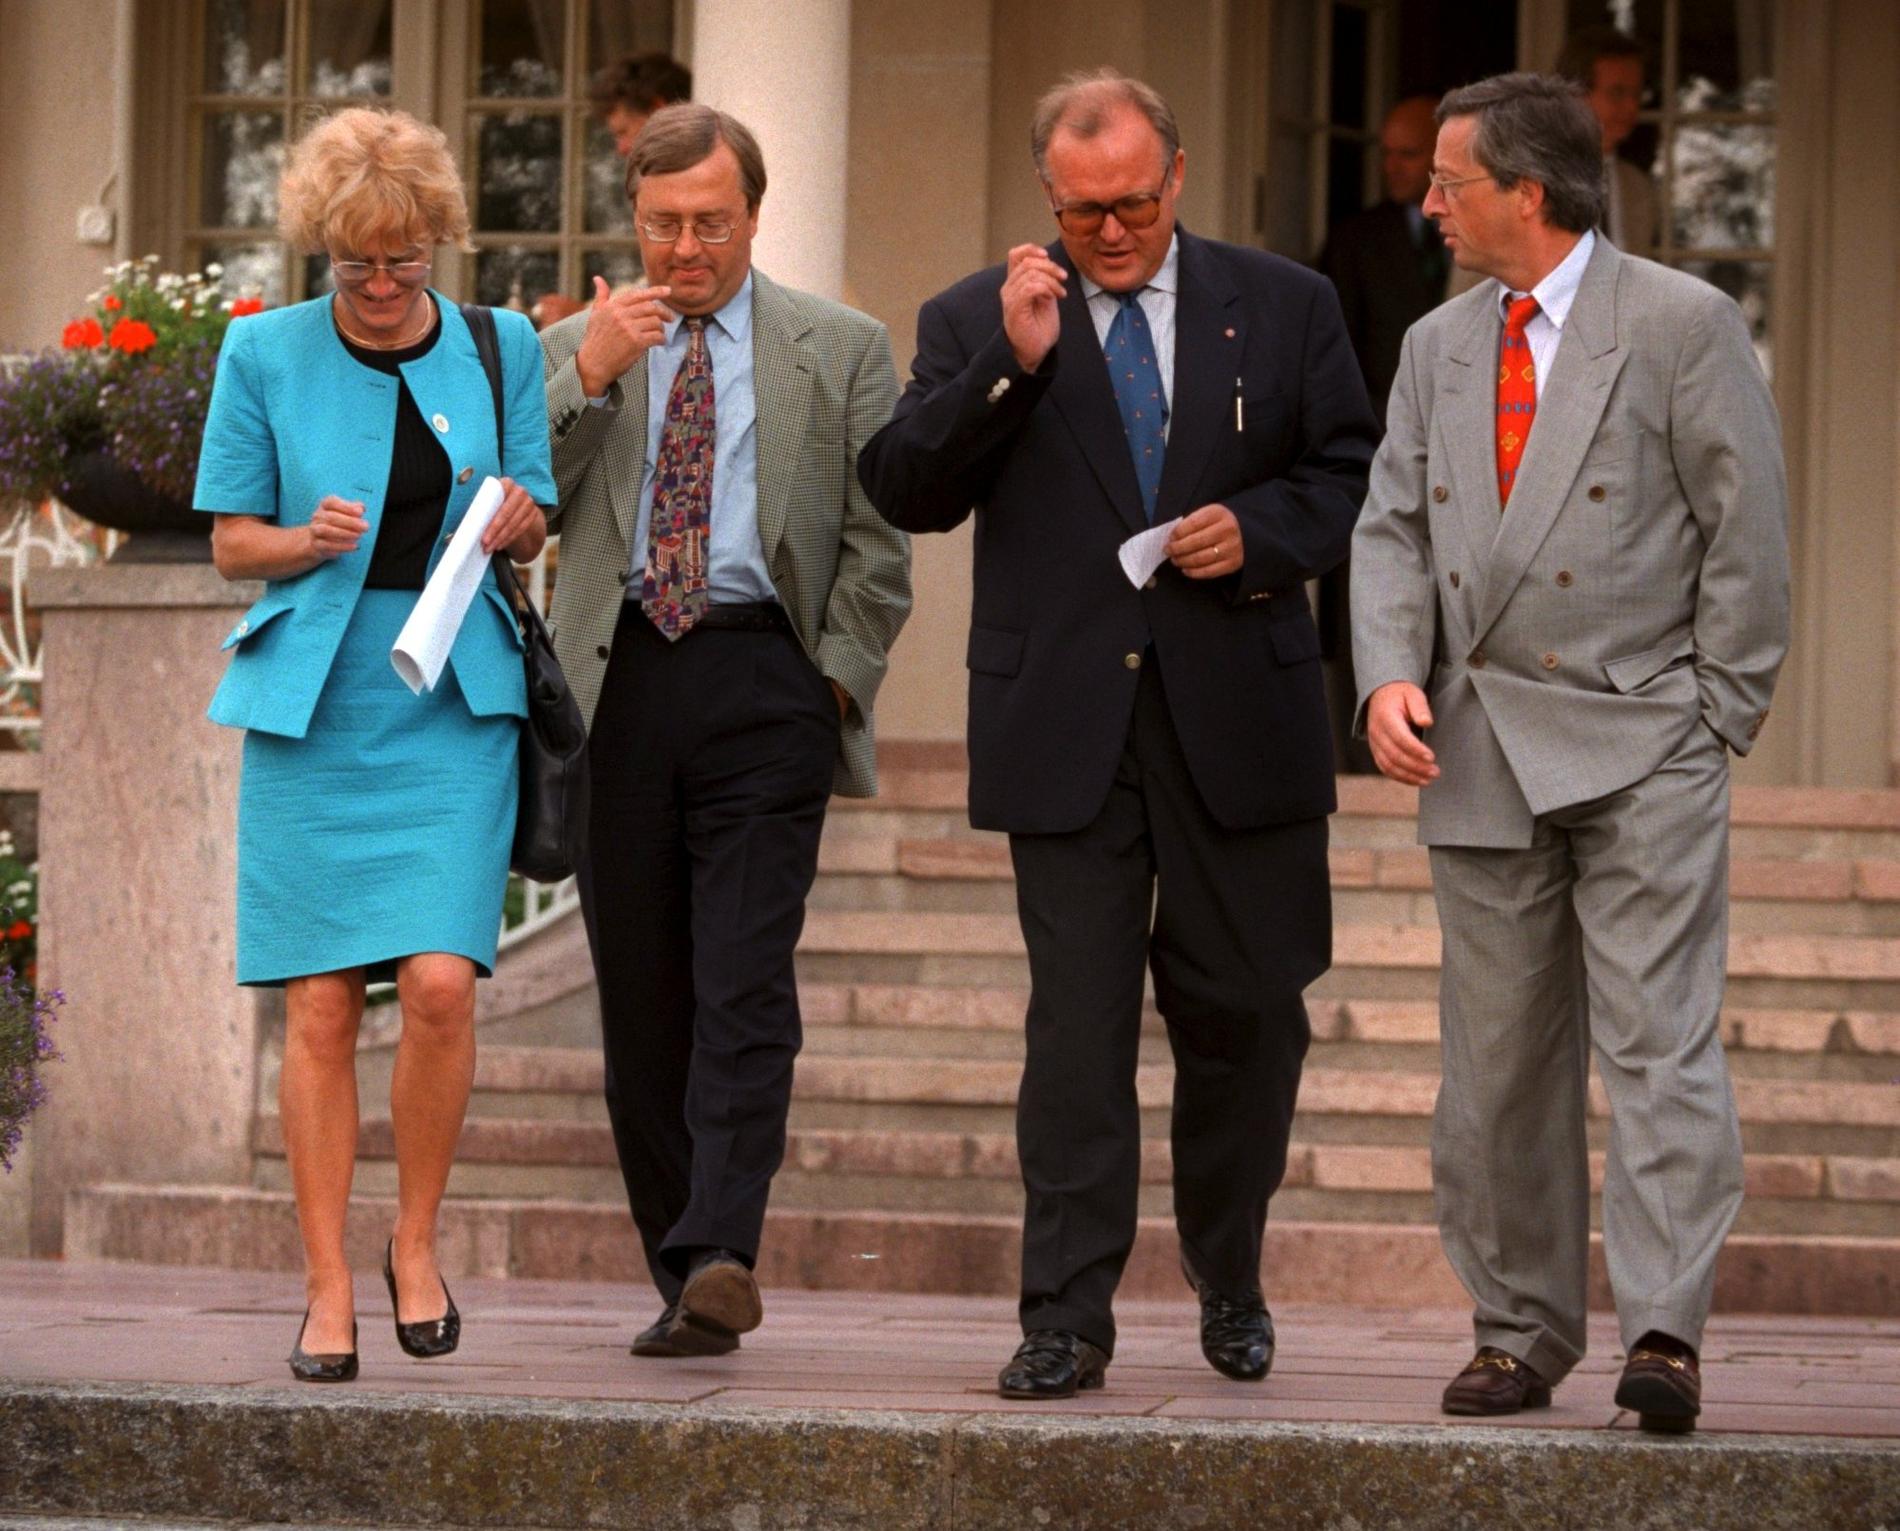 Toppmöte mellan Sverige och Luxemburg på Harpsund i augusti 1997. Från vänster: Luxemburgs socialminister Mady Delvaux-Stehres, Sveriges finansminister Erik Åsbrink, statsminister Göran Persson, Luxemburgs premiärminister Jean-Claude Juncker.